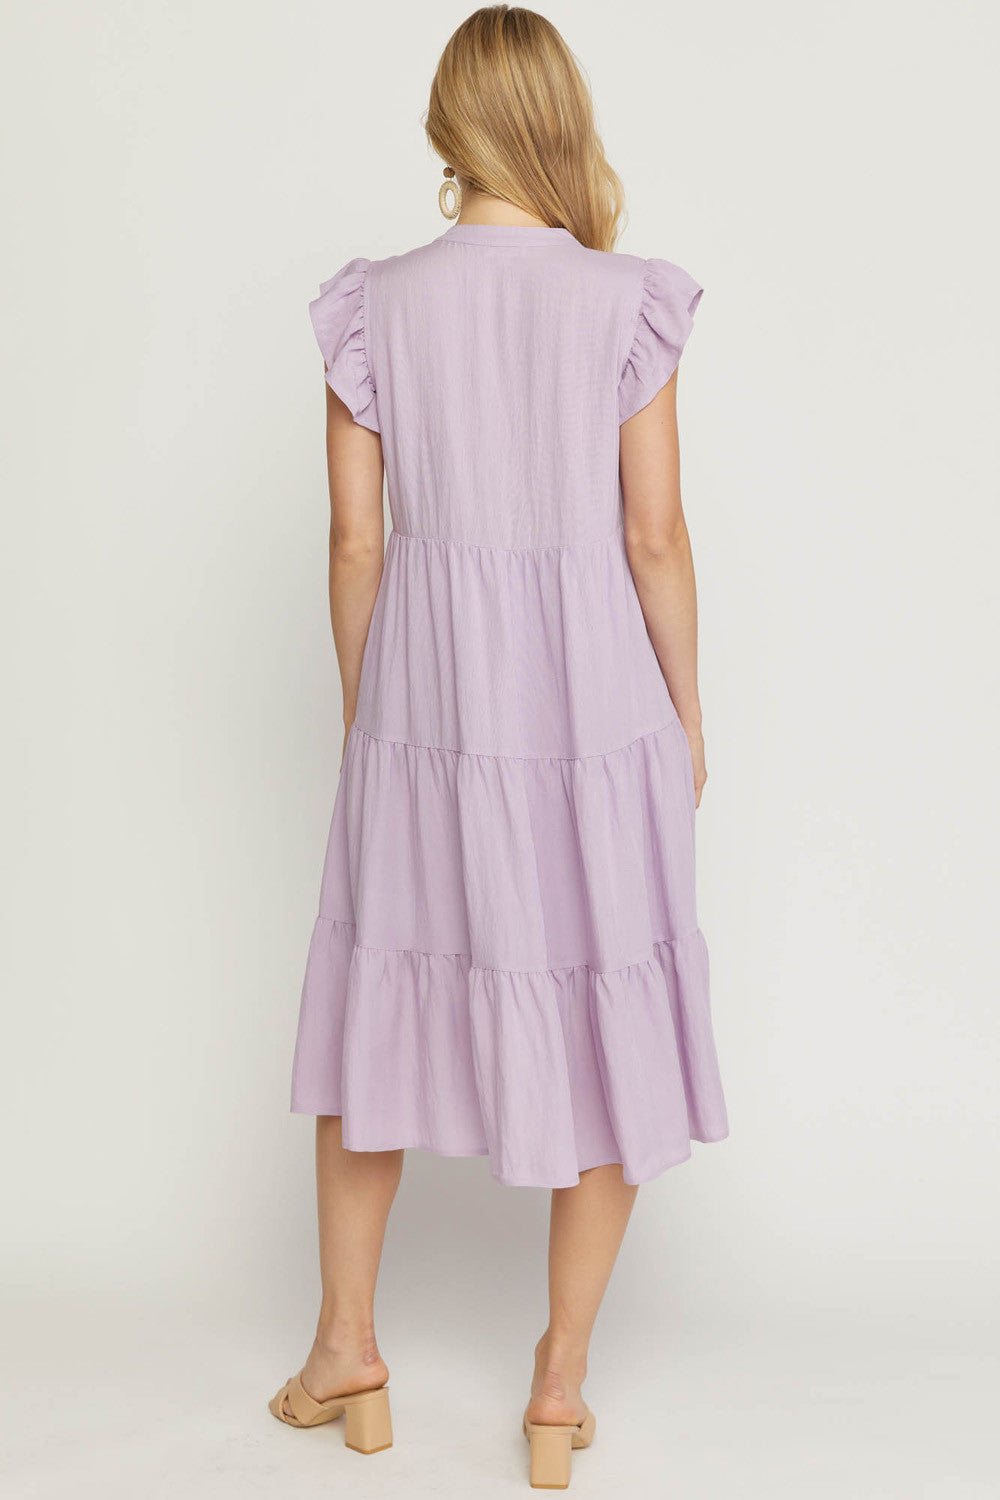 Lavender Dress Plus Size